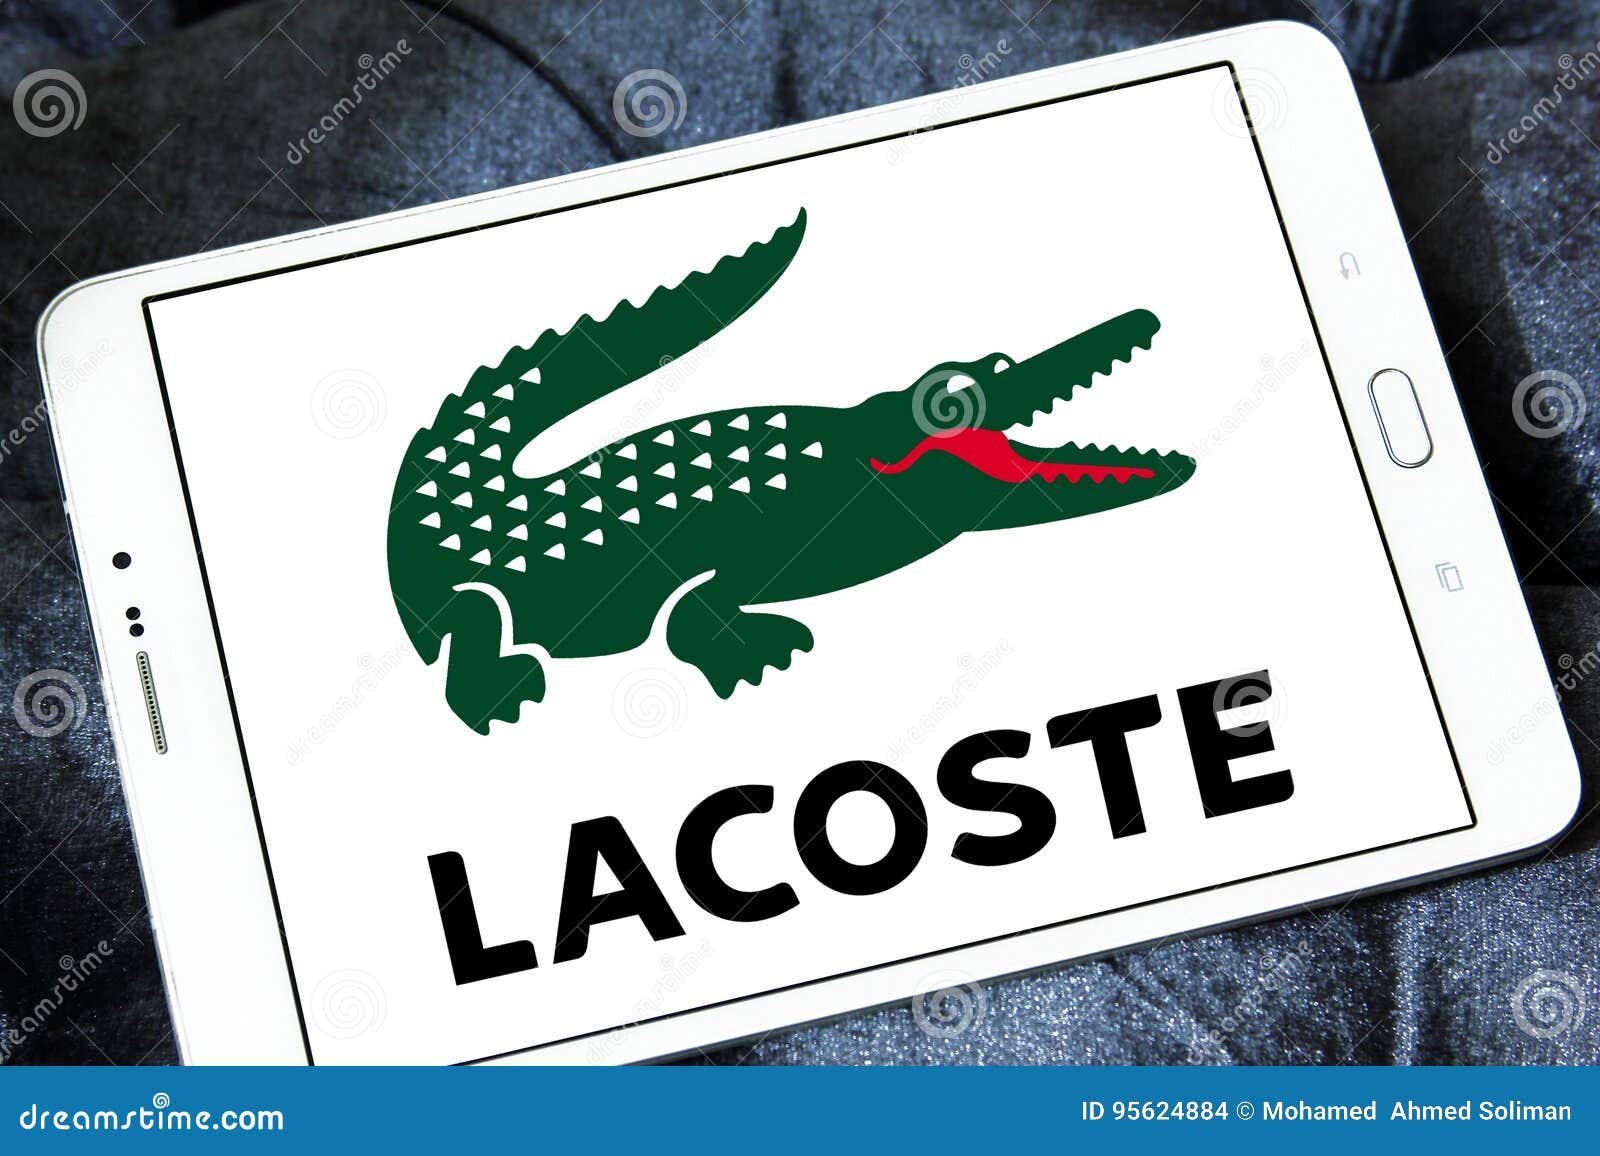 alligator clothing company